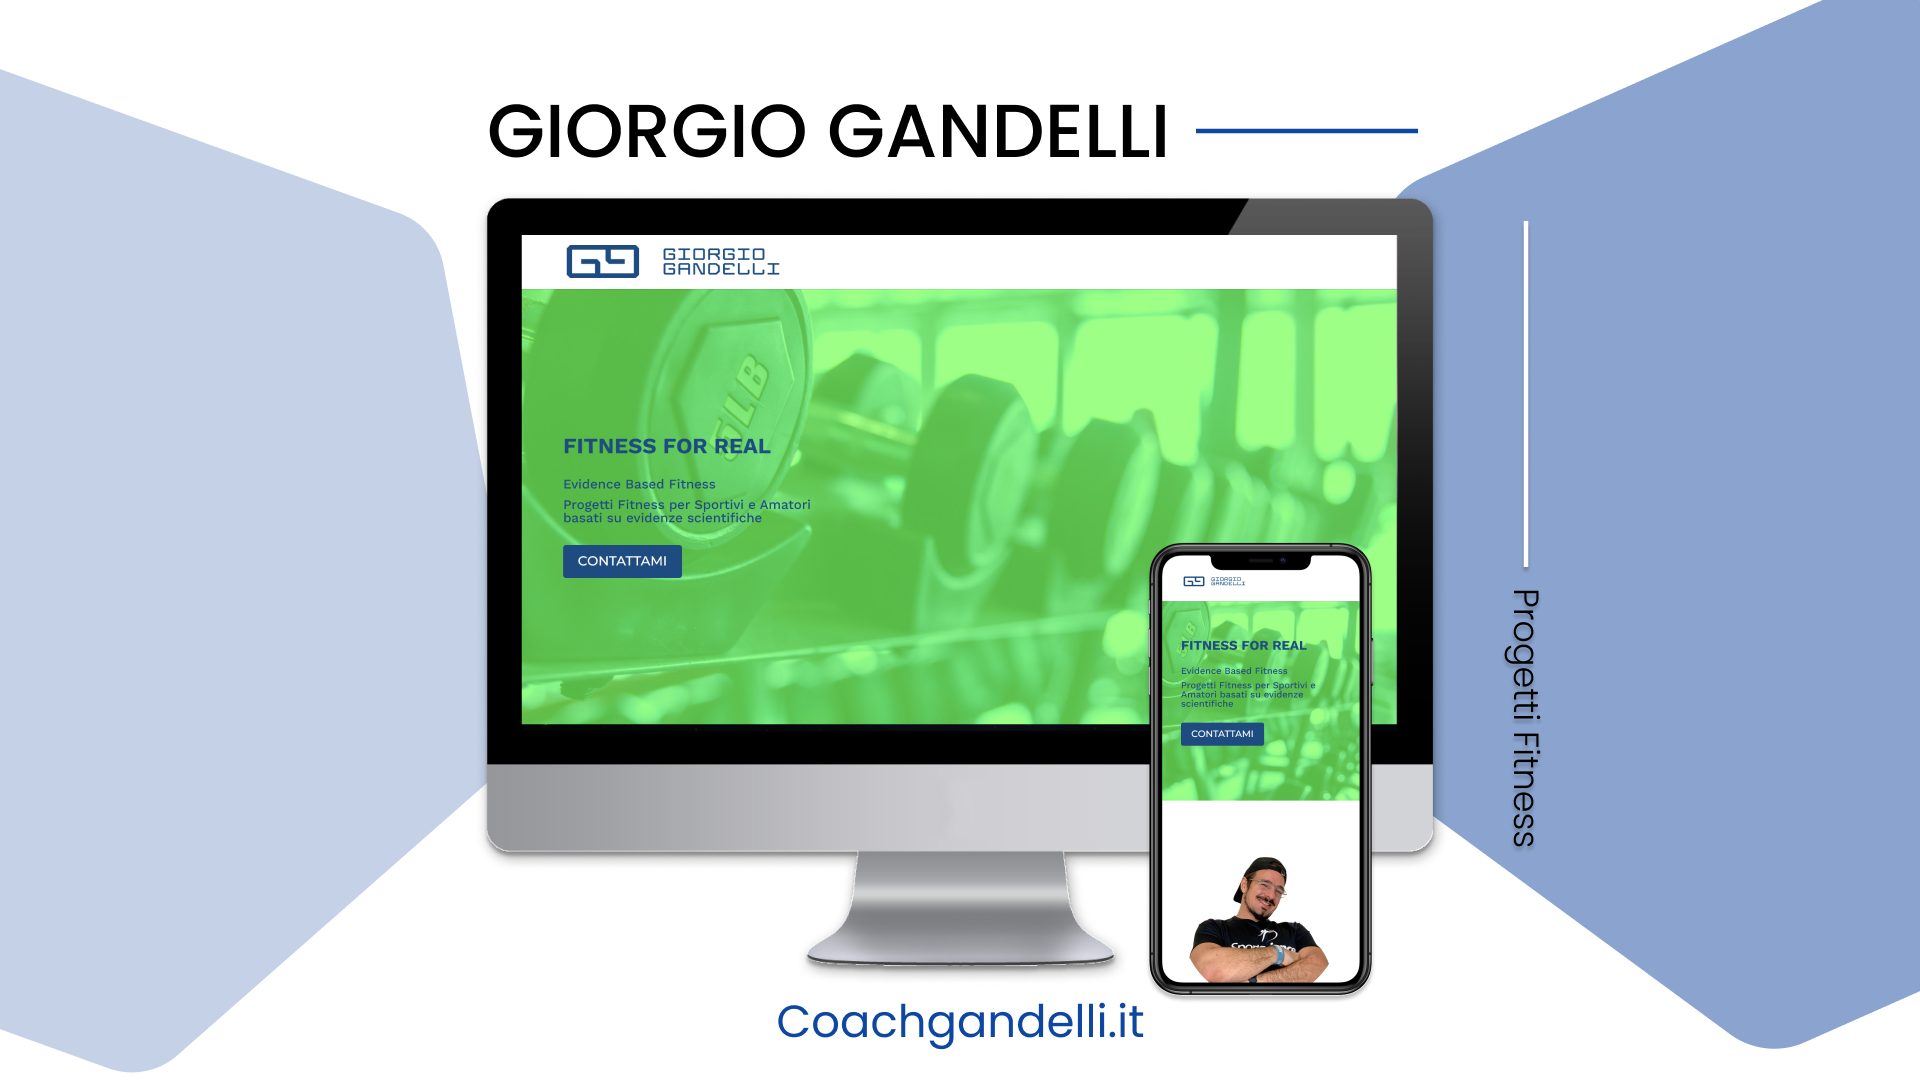 Giorgio Gandelli